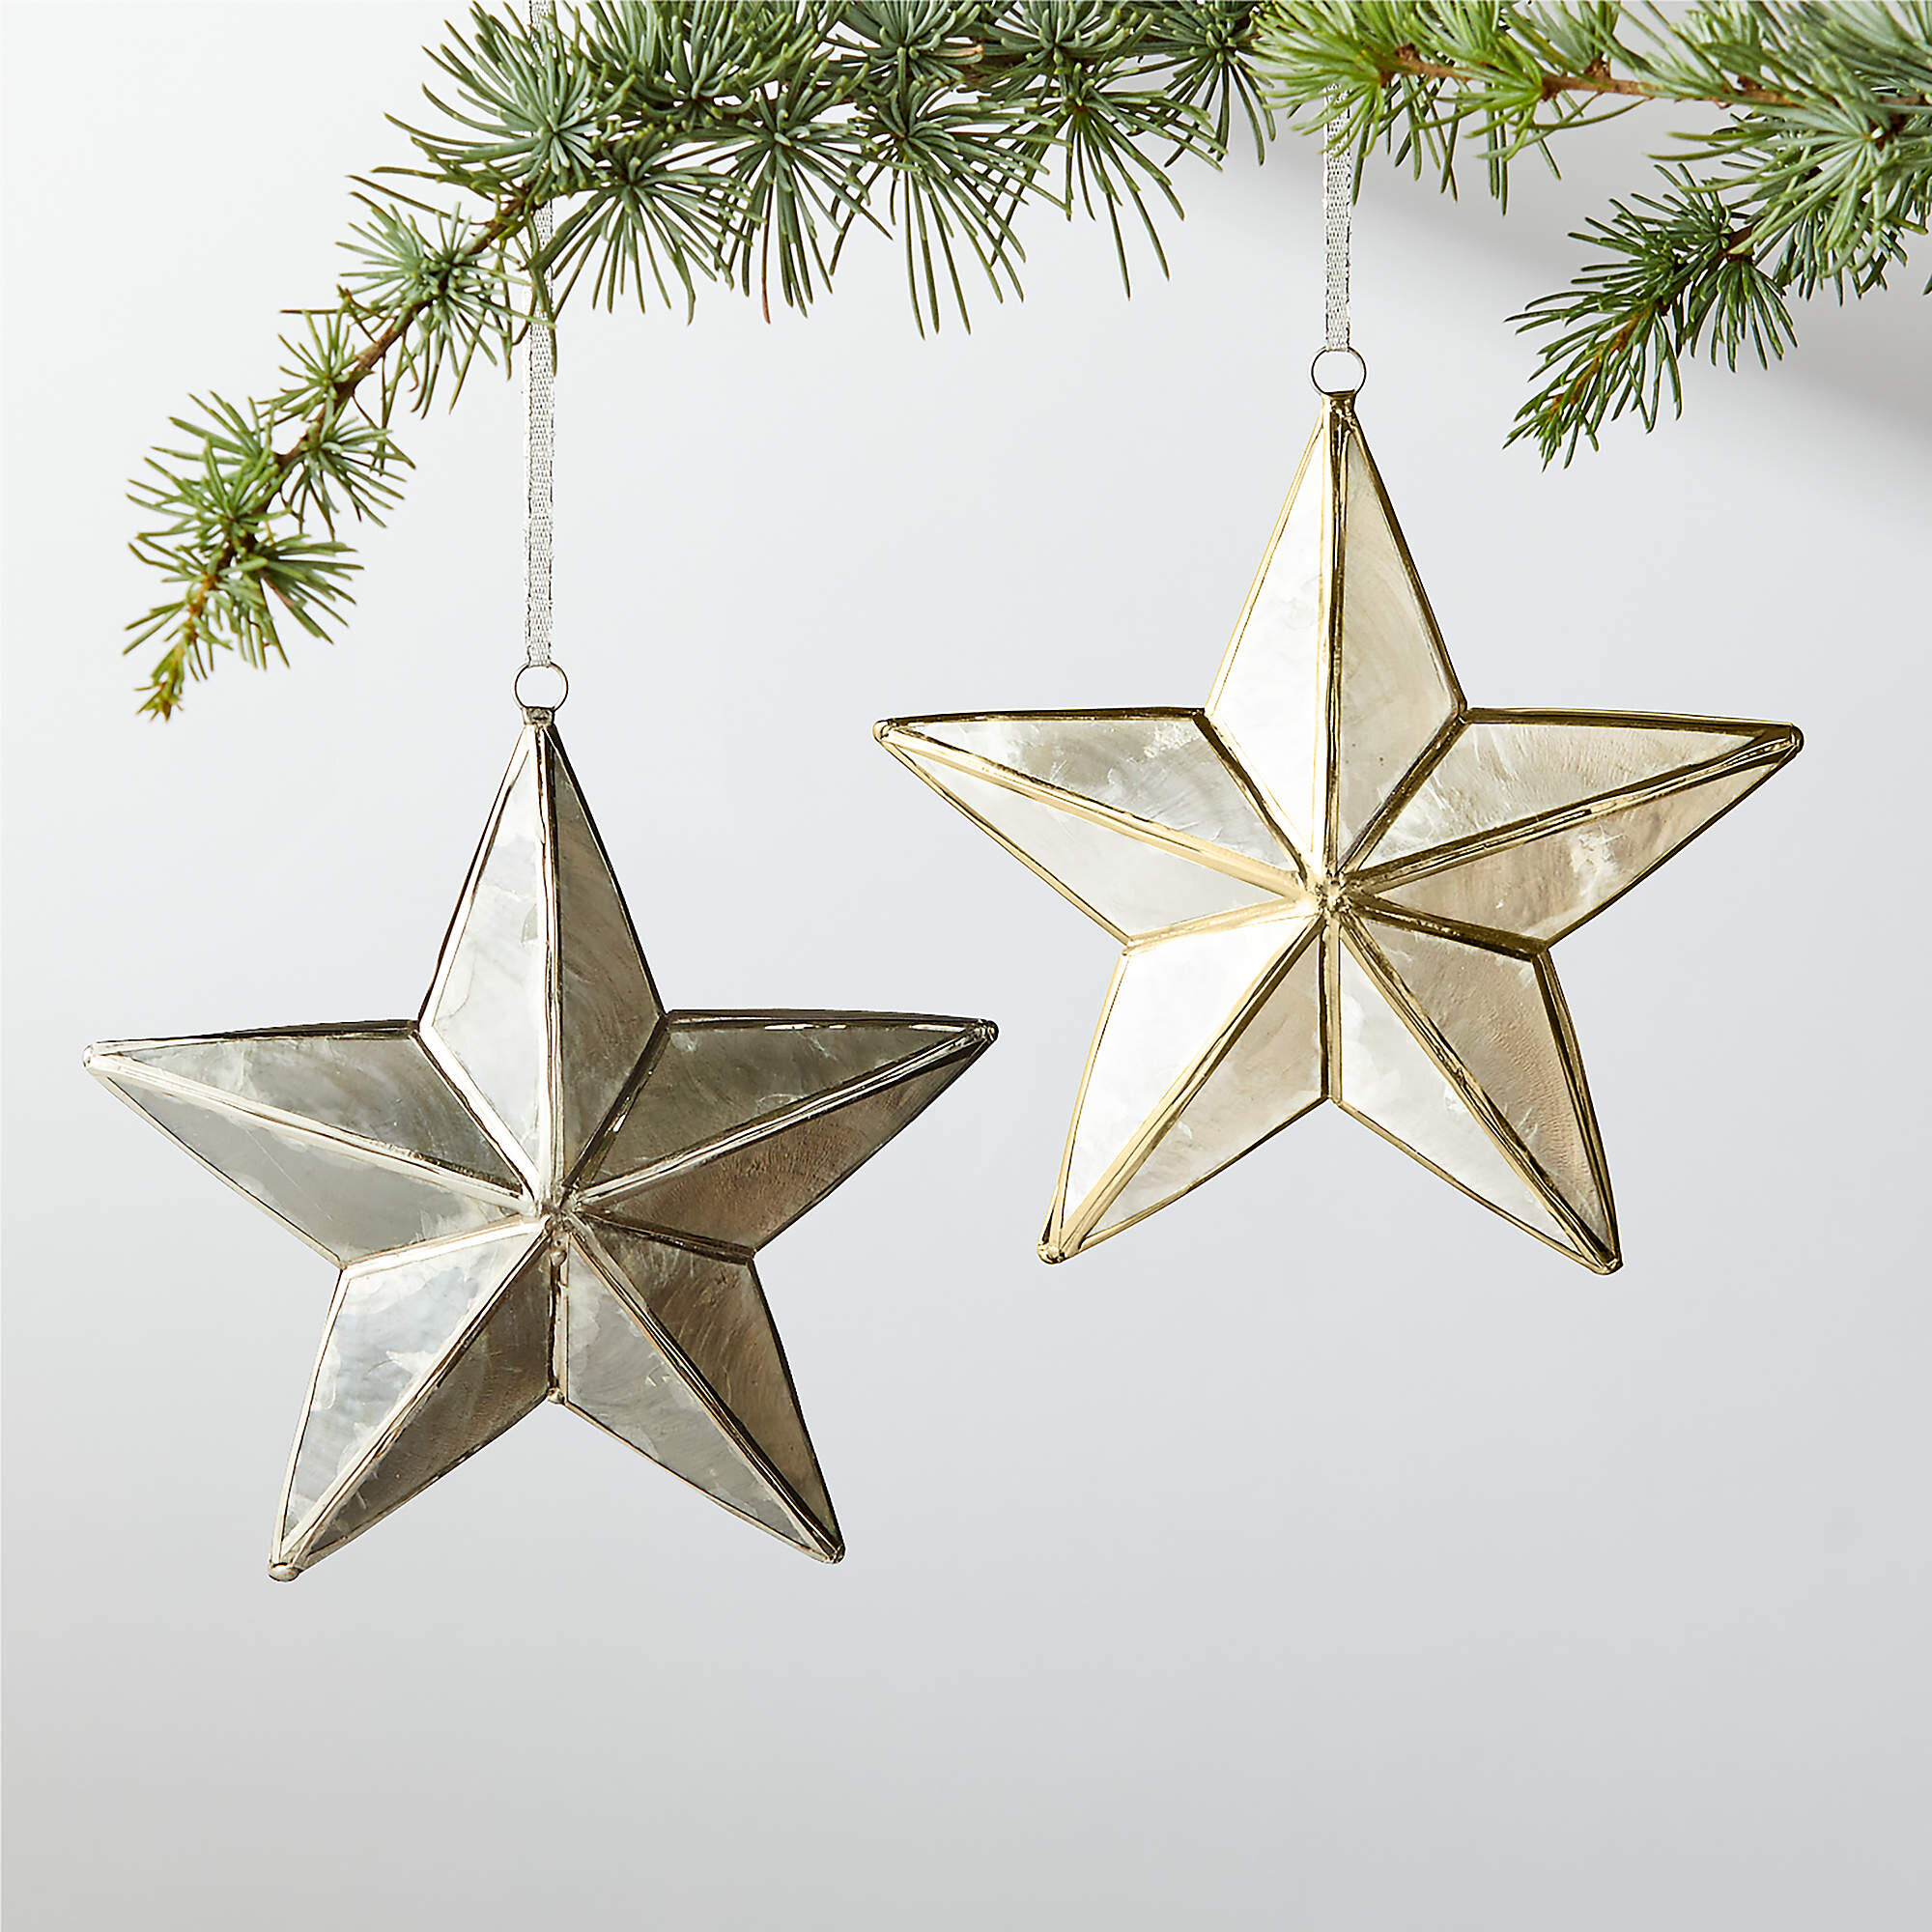 capiz-star-ornaments.jpeg